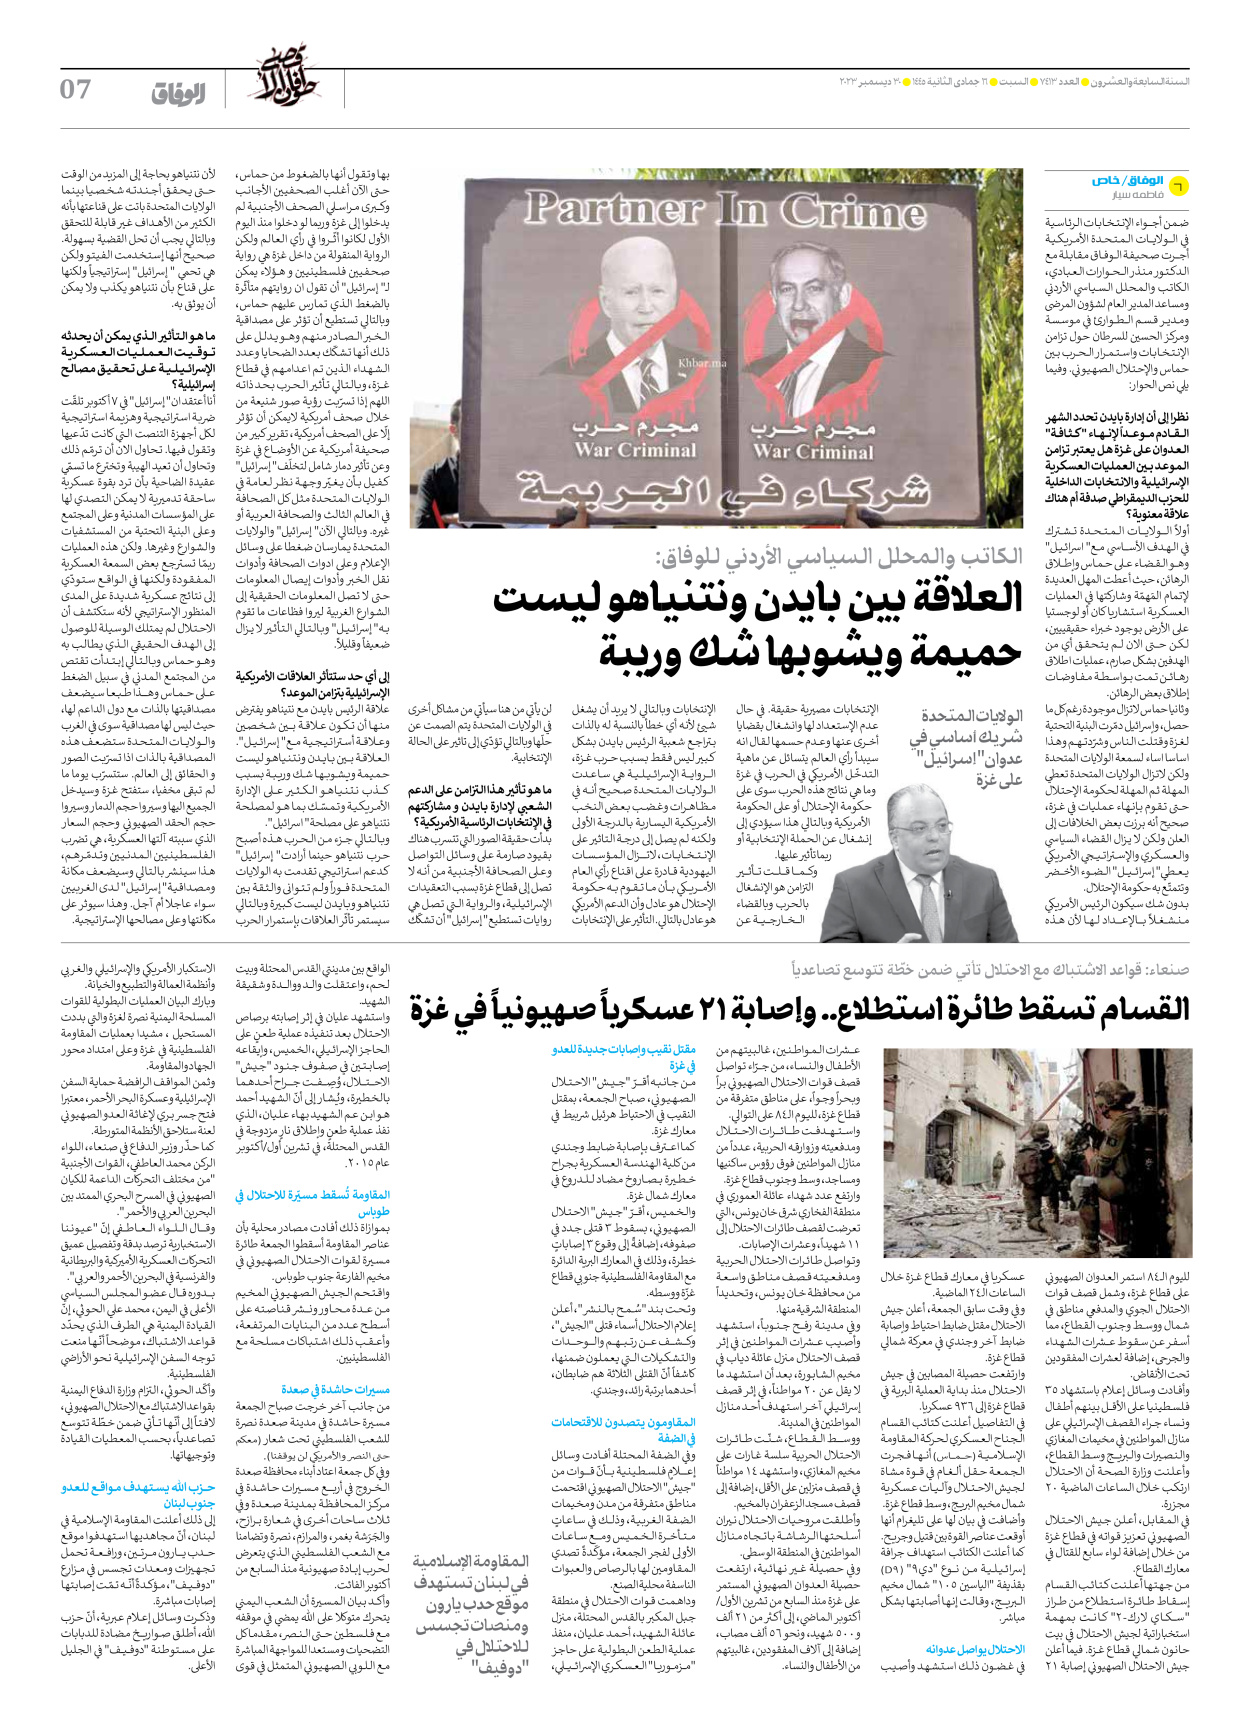 صحیفة ایران الدولیة الوفاق - العدد سبعة آلاف وأربعمائة وثلاثة عشر - ٣٠ ديسمبر ٢٠٢٣ - الصفحة ۷